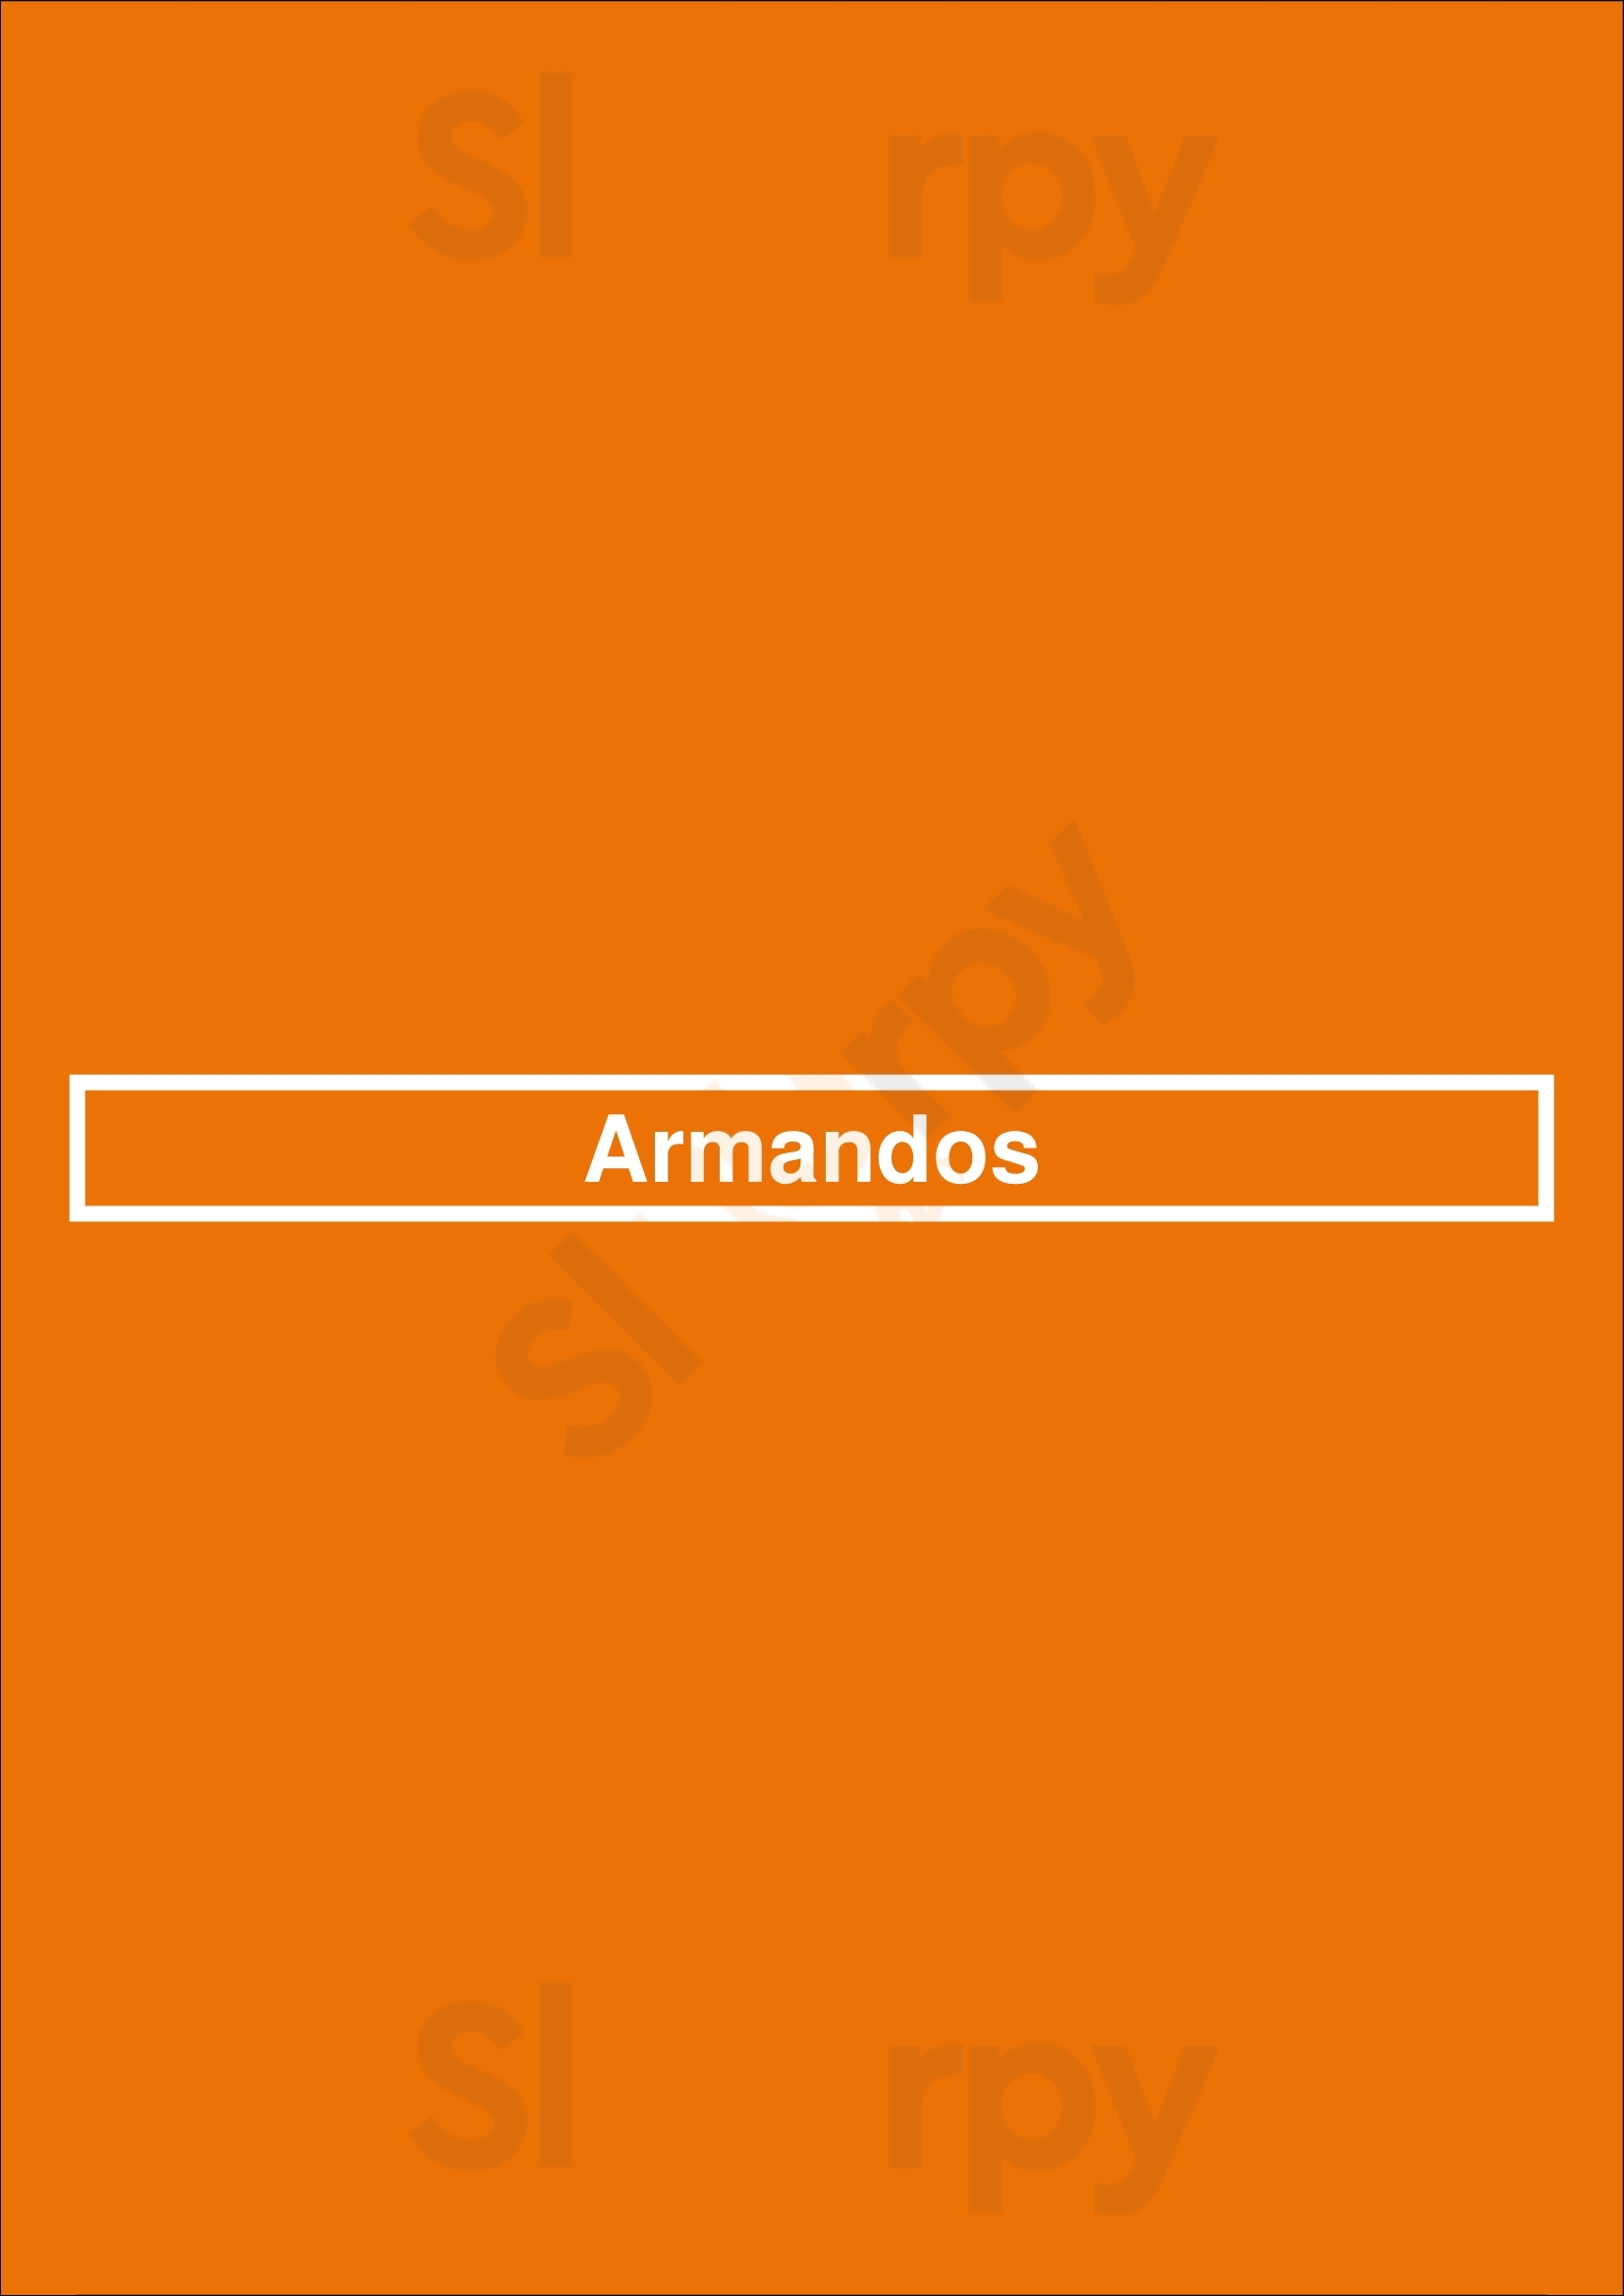 Armandos Houston Menu - 1